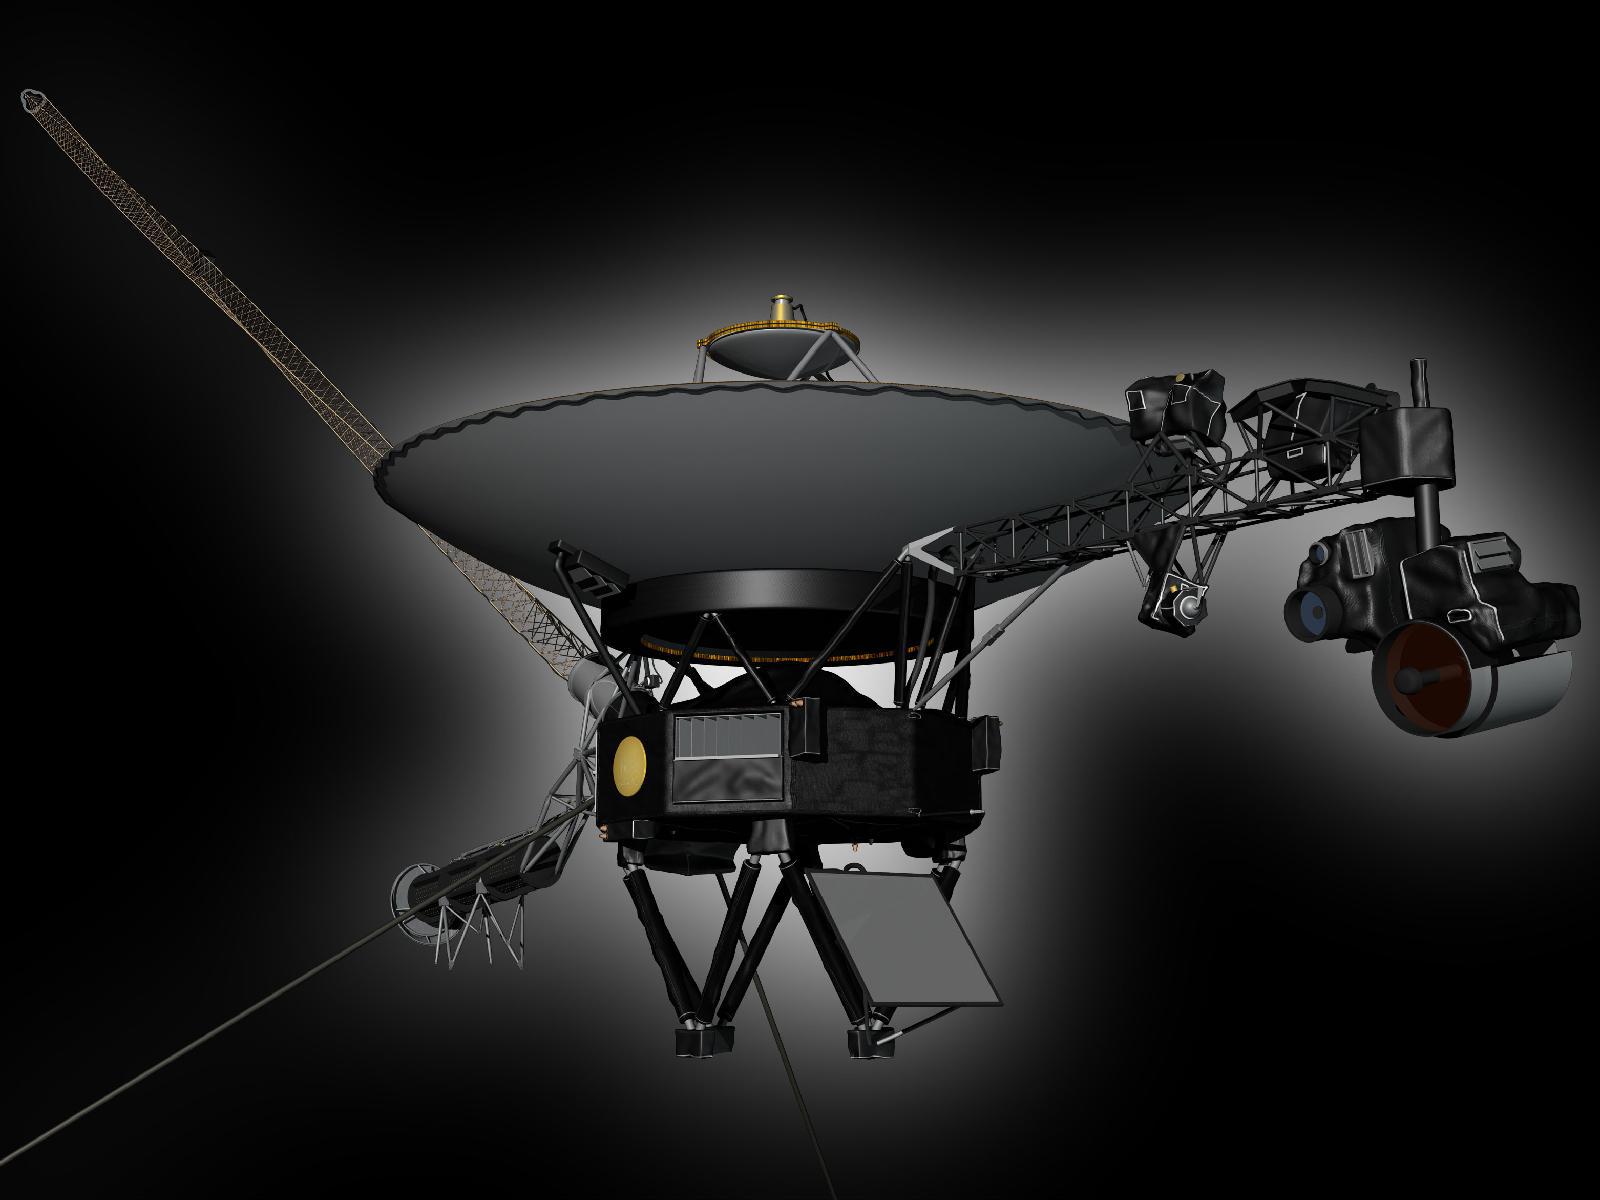 slide 3 - Voyager spacecraft